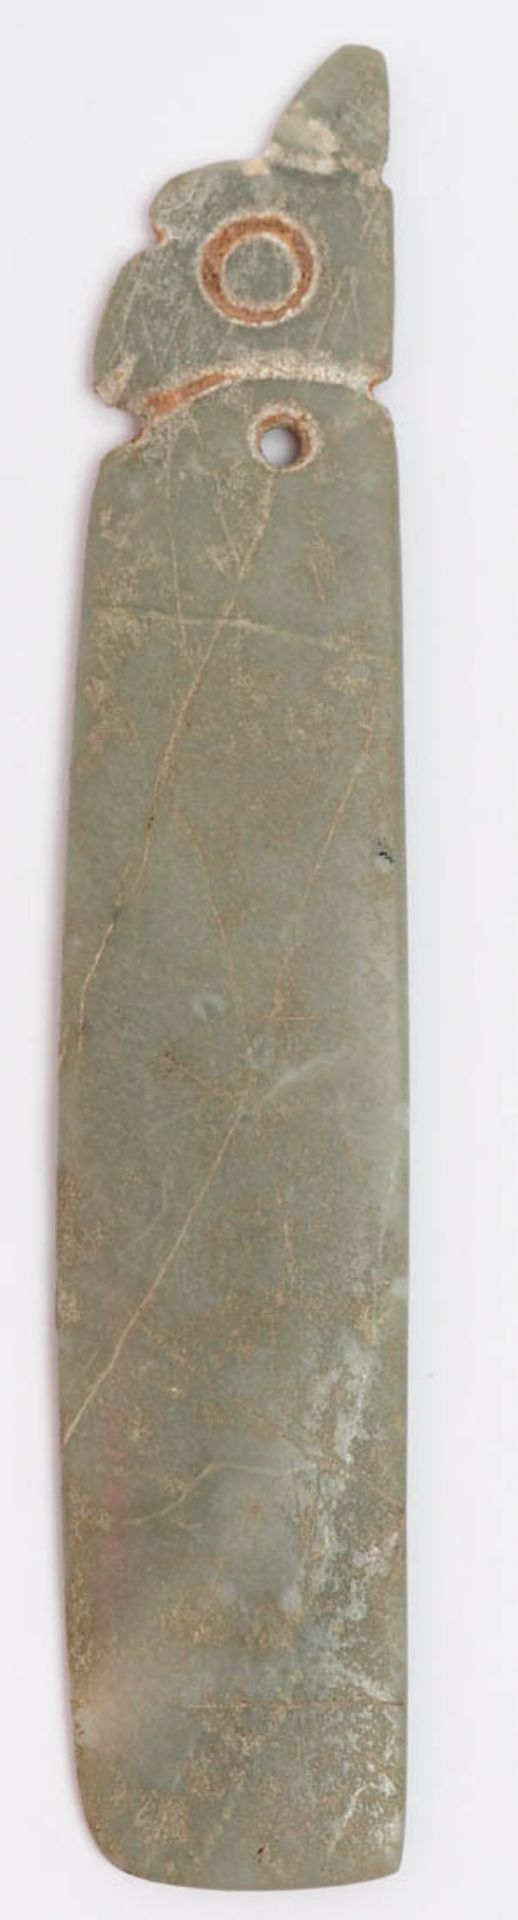 Präkolumbischer Axtanhänger, Mittelamerika Periode IV. Galttgeschliffener, grüner Stein (Jade?) - Bild 2 aus 3